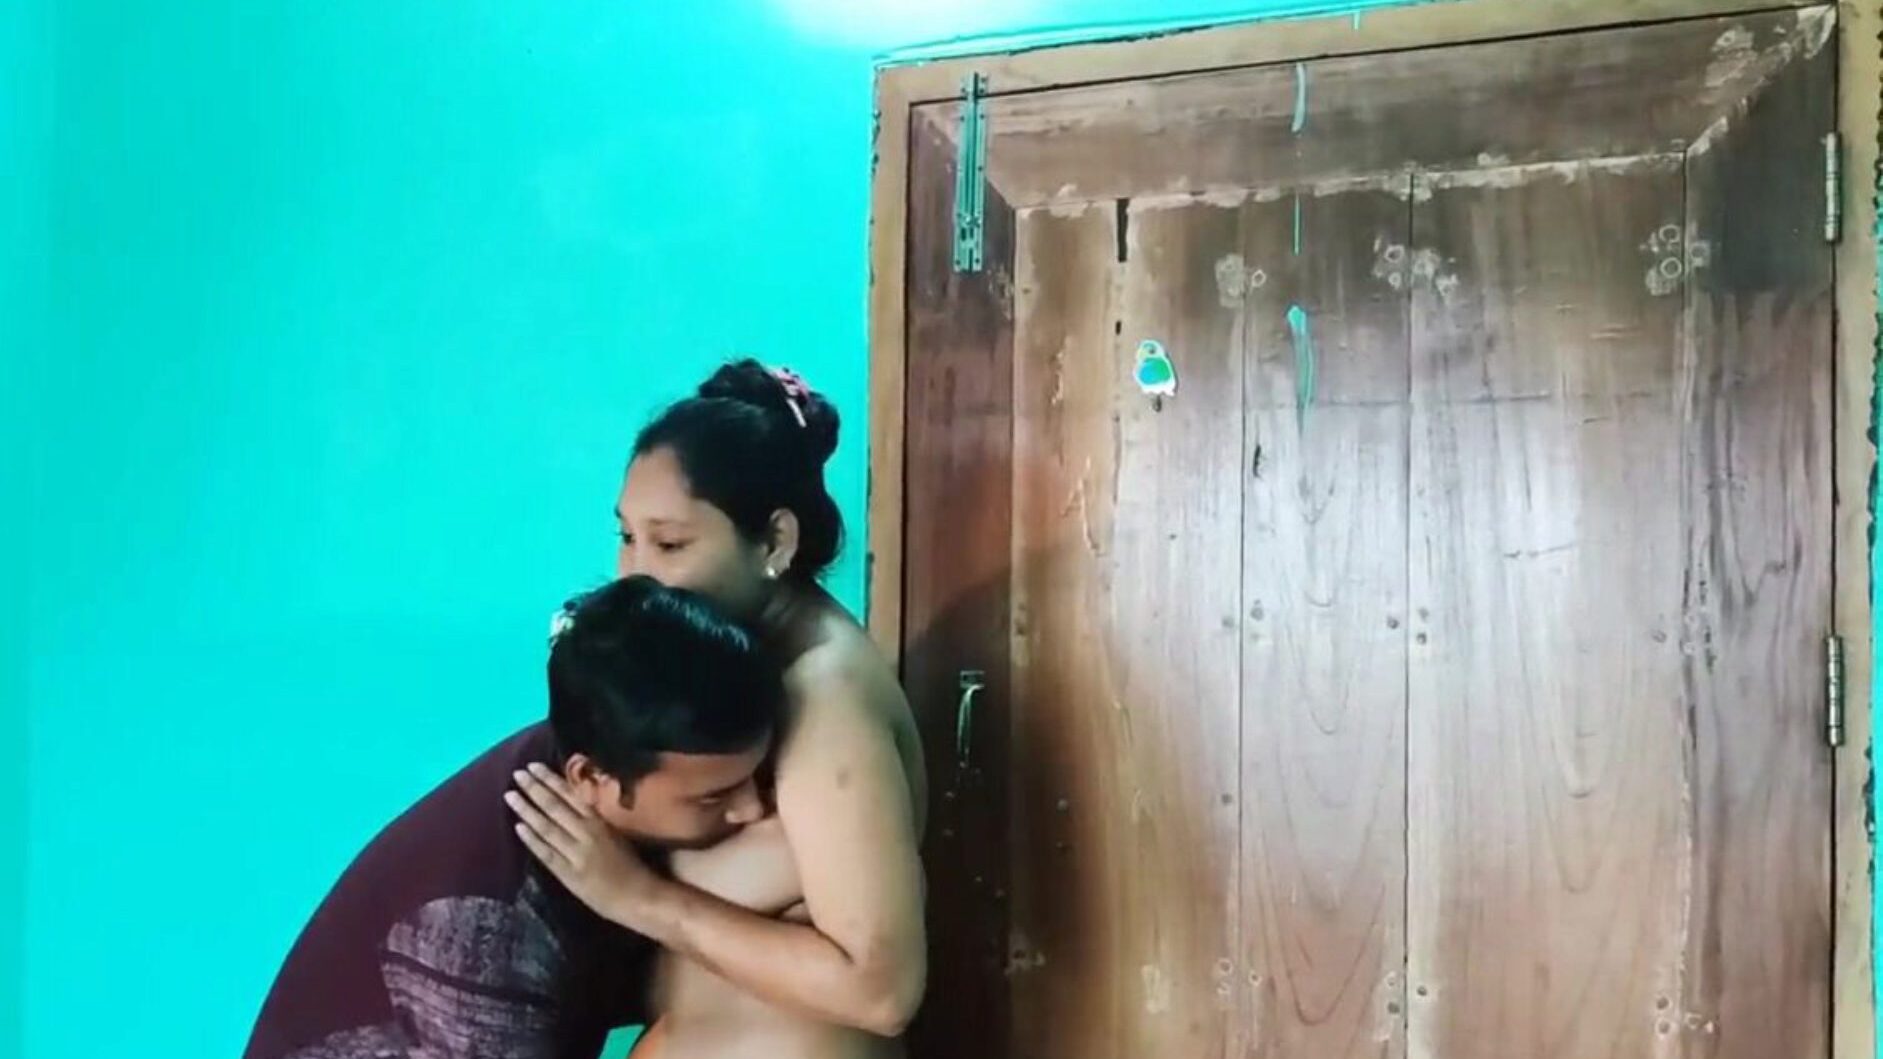 desi bengali sex video naken, gratis asiatisk porno 6c: xhamster se desi bengali sex video naken episode på xhamster, den feteste hd fuck-fest tube nettressurs med tonnevis av gratis-for-alle asiatiske xxn sex og anal pornografi vids